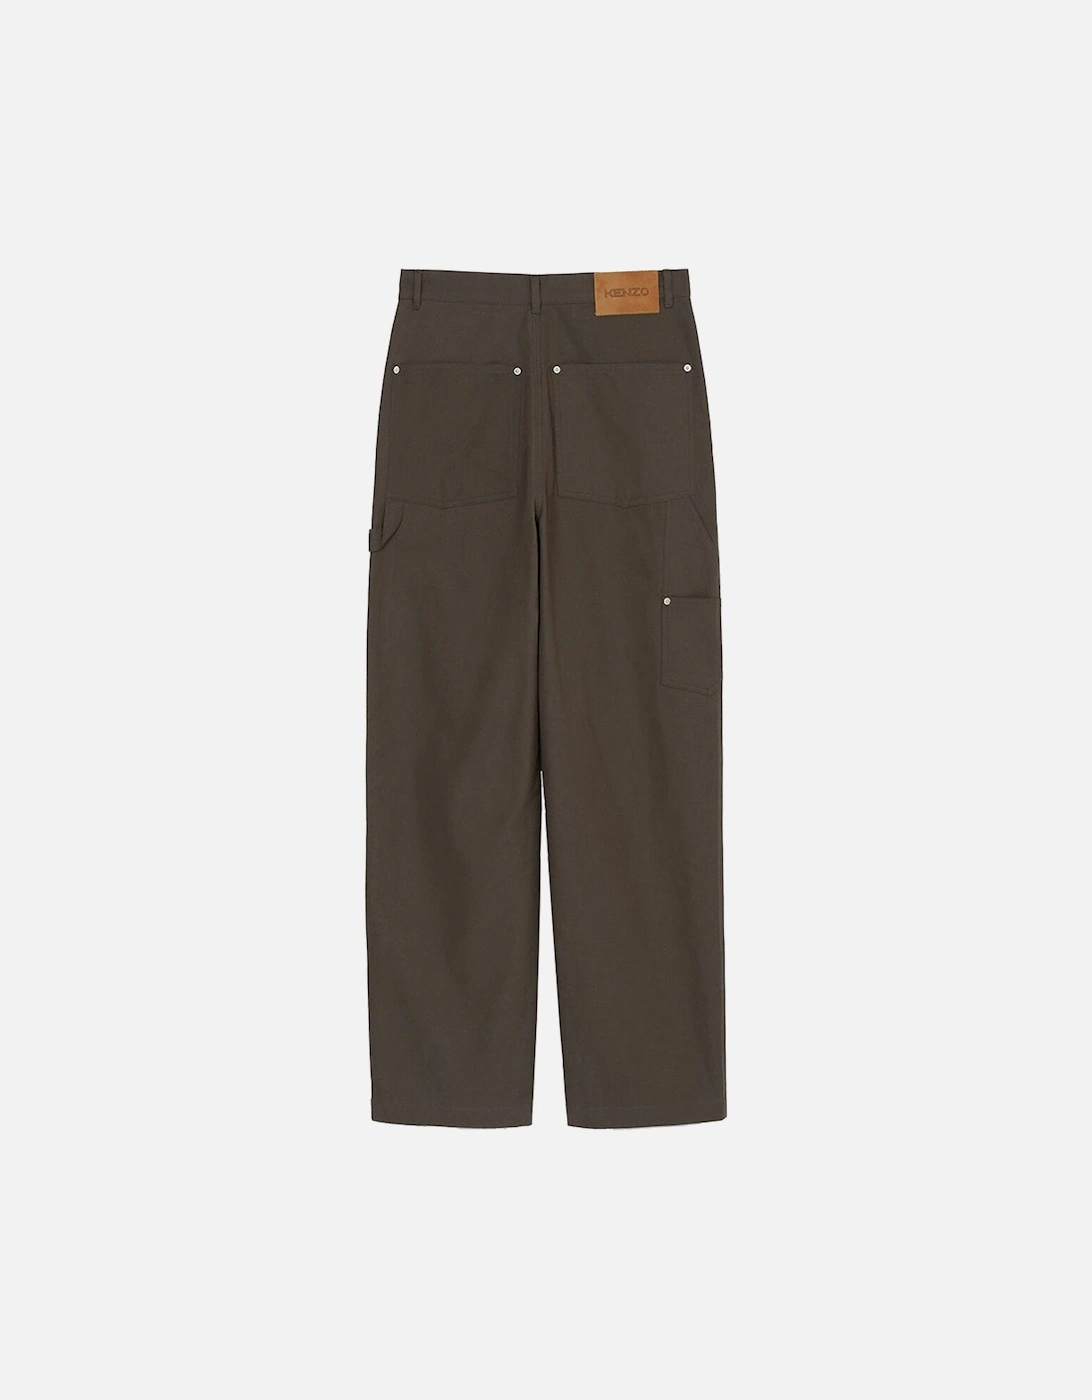 Men's Plain Carpenter Pants Khaki